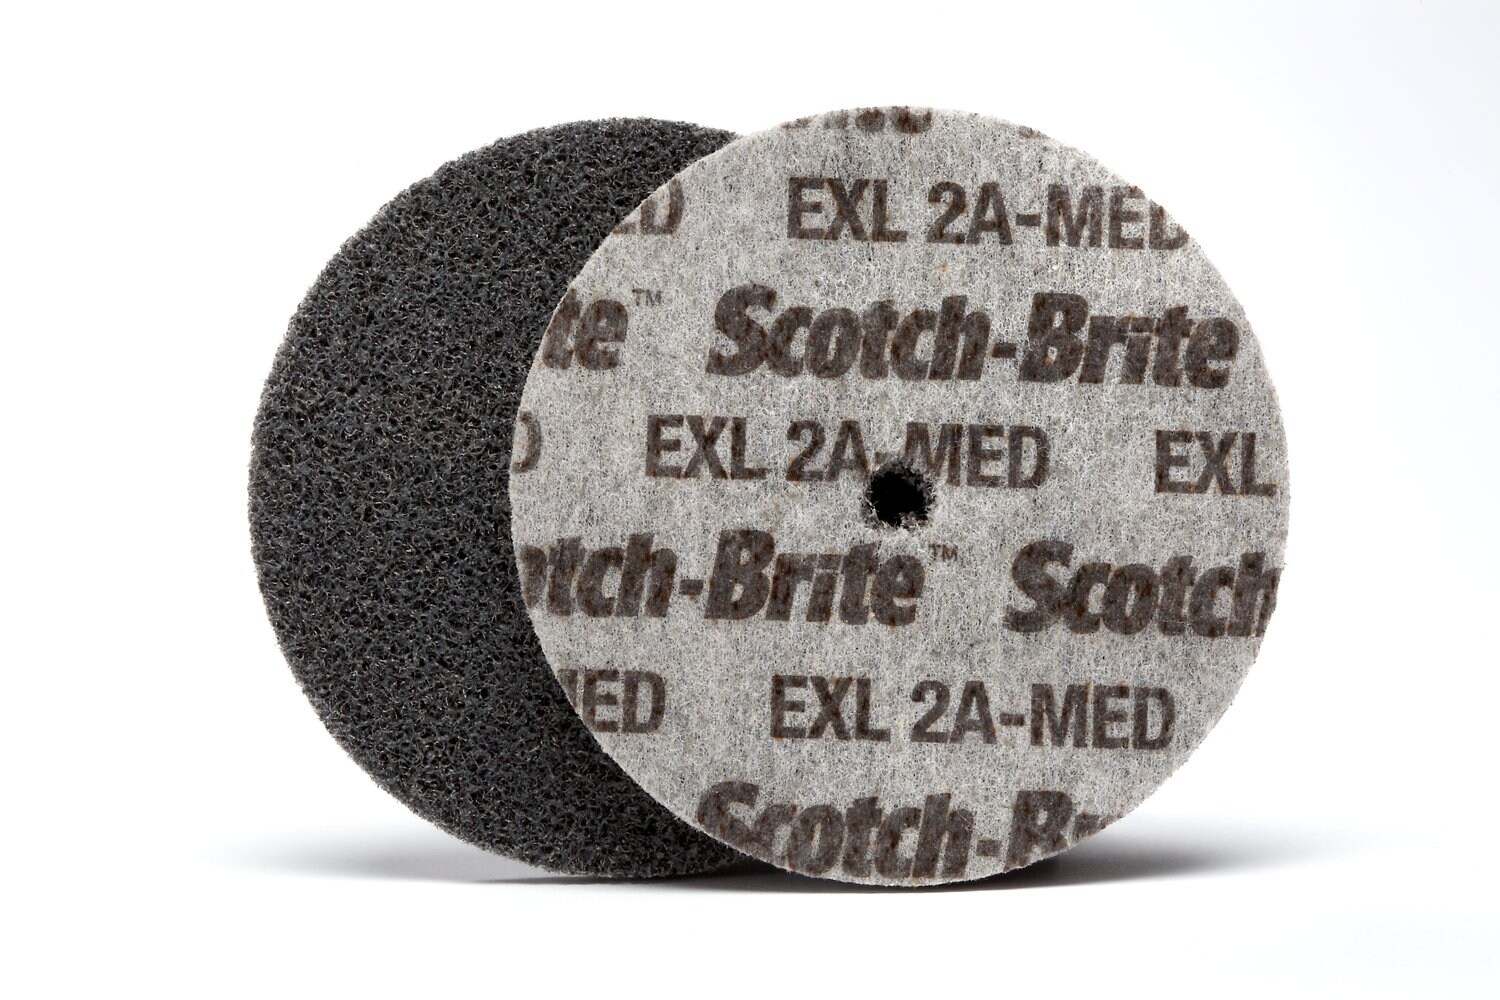 7100188540 - Scotch-Brite EXL Unitized Wheel, XL-UW, 2A Medium, 6 in x 3/20 in x 1
in, 24561A, 4 ea/Case